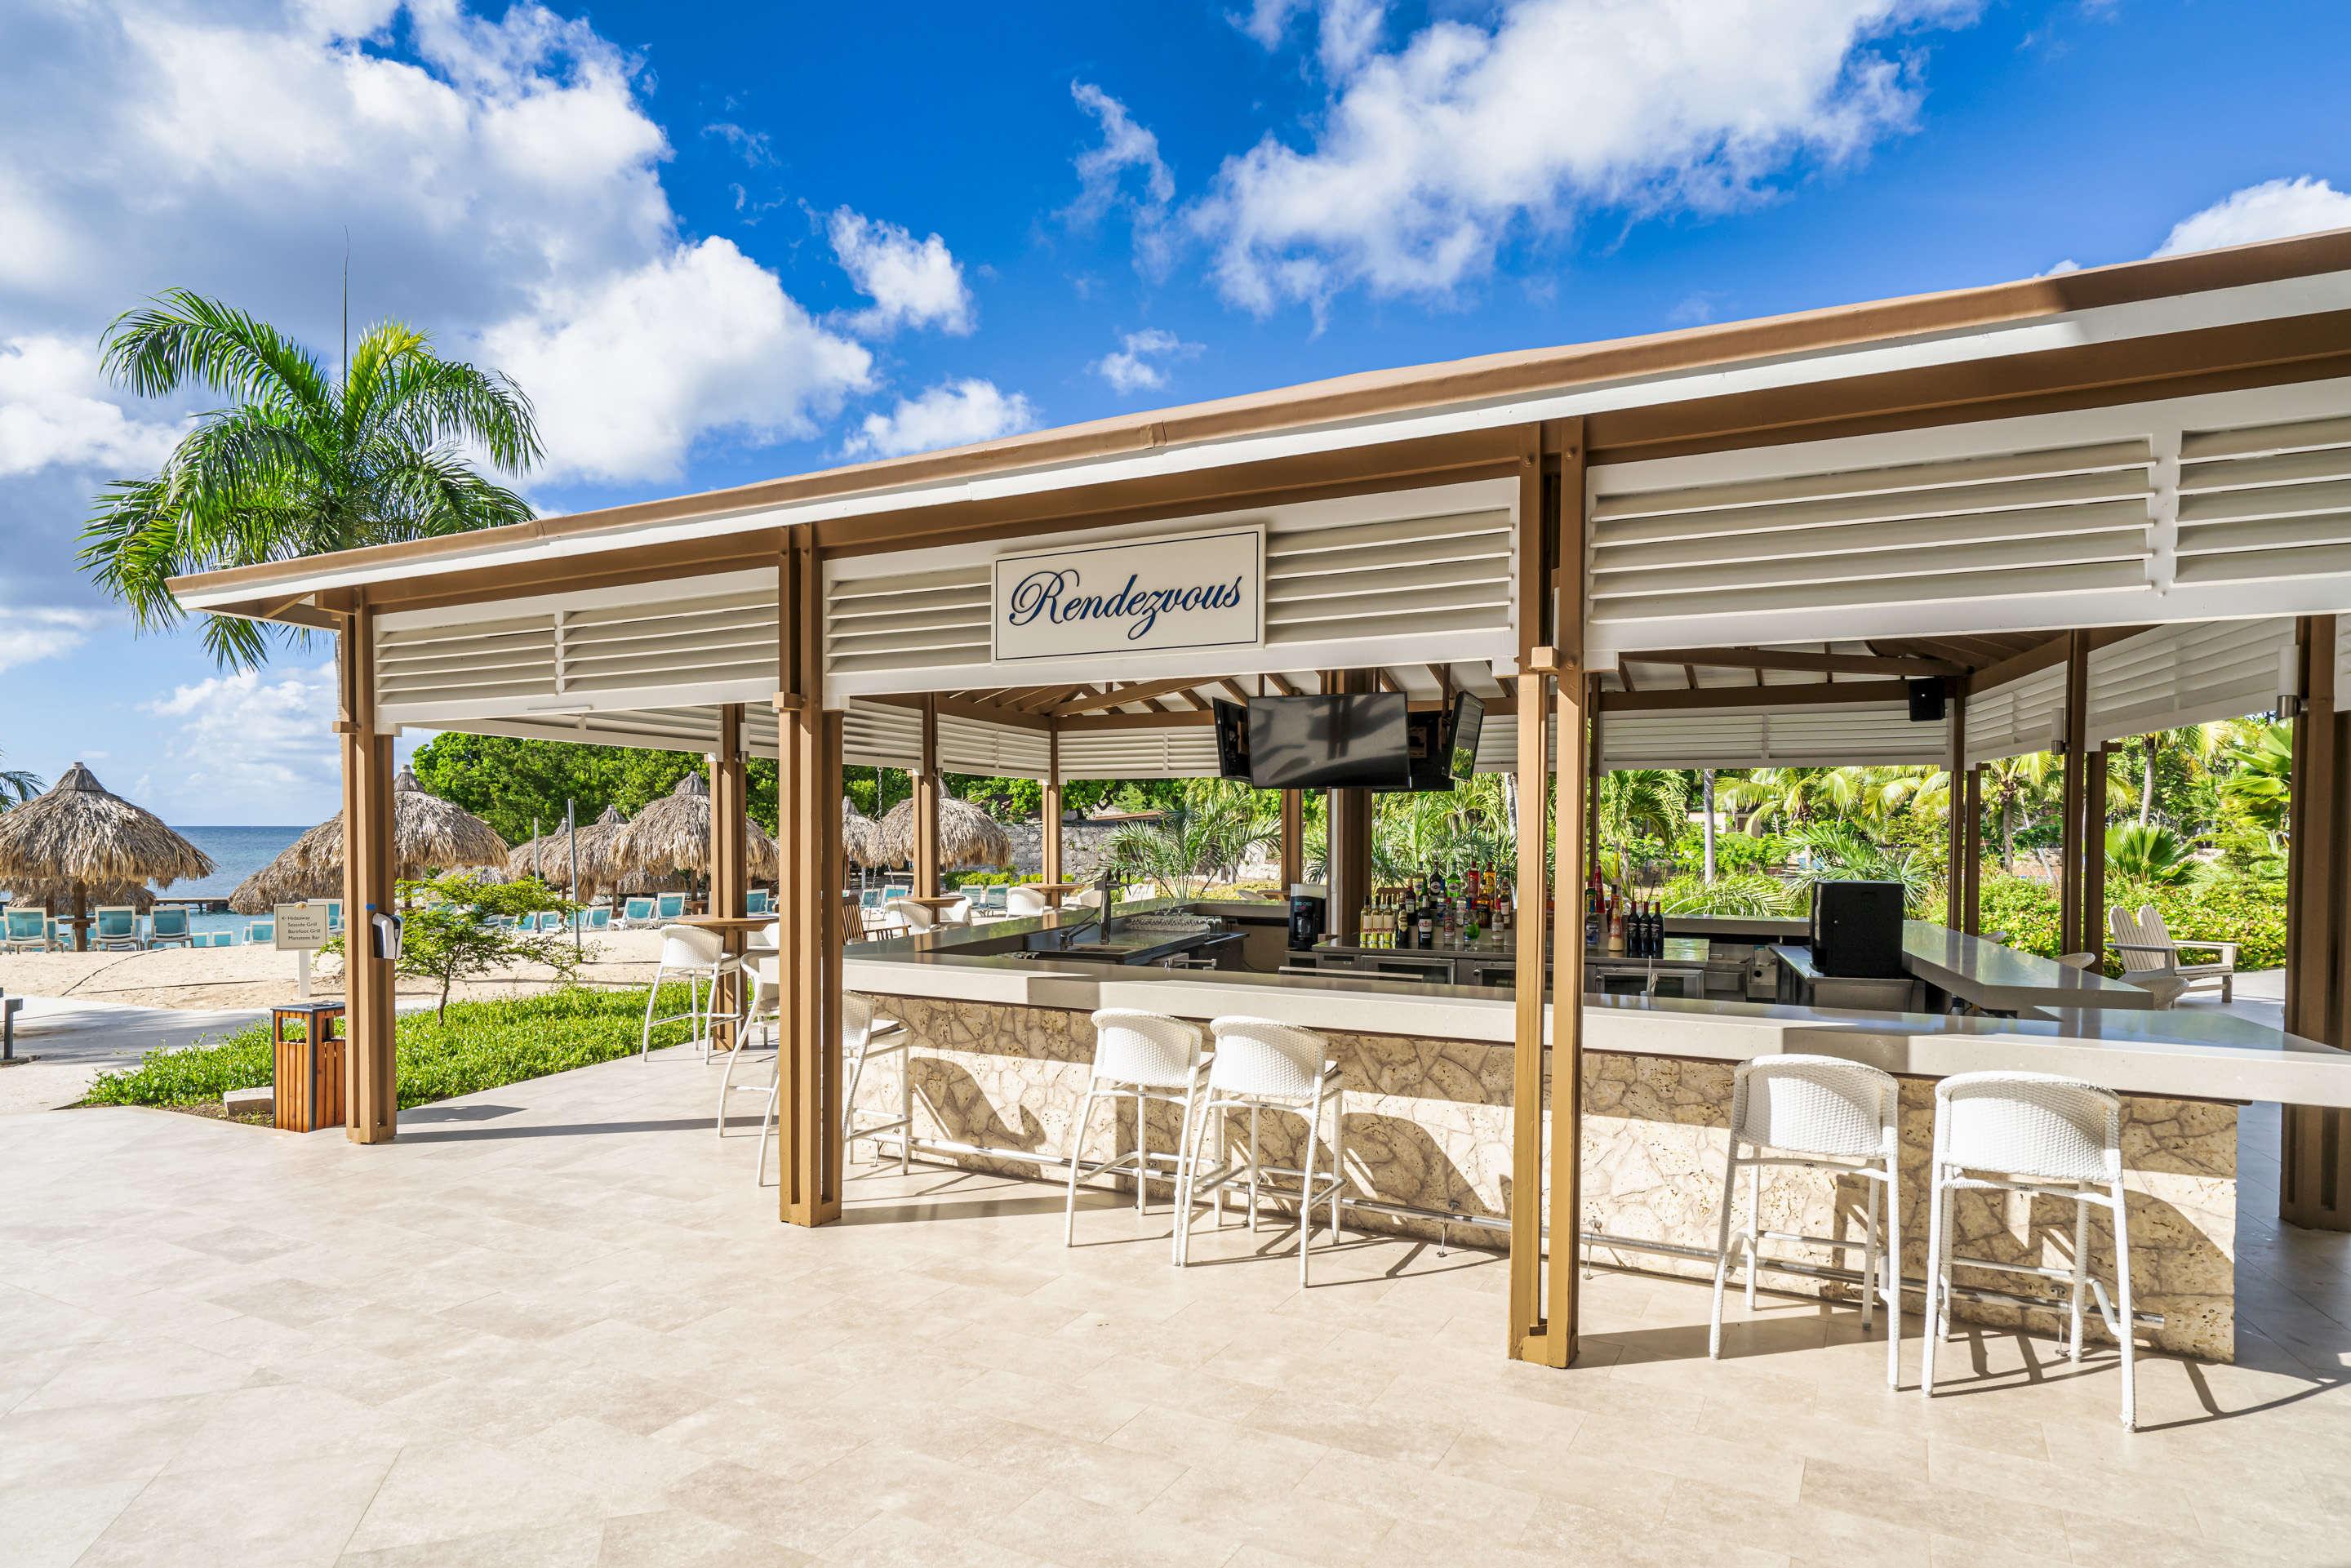 Fantasy Curacao Resort Spa & Casino